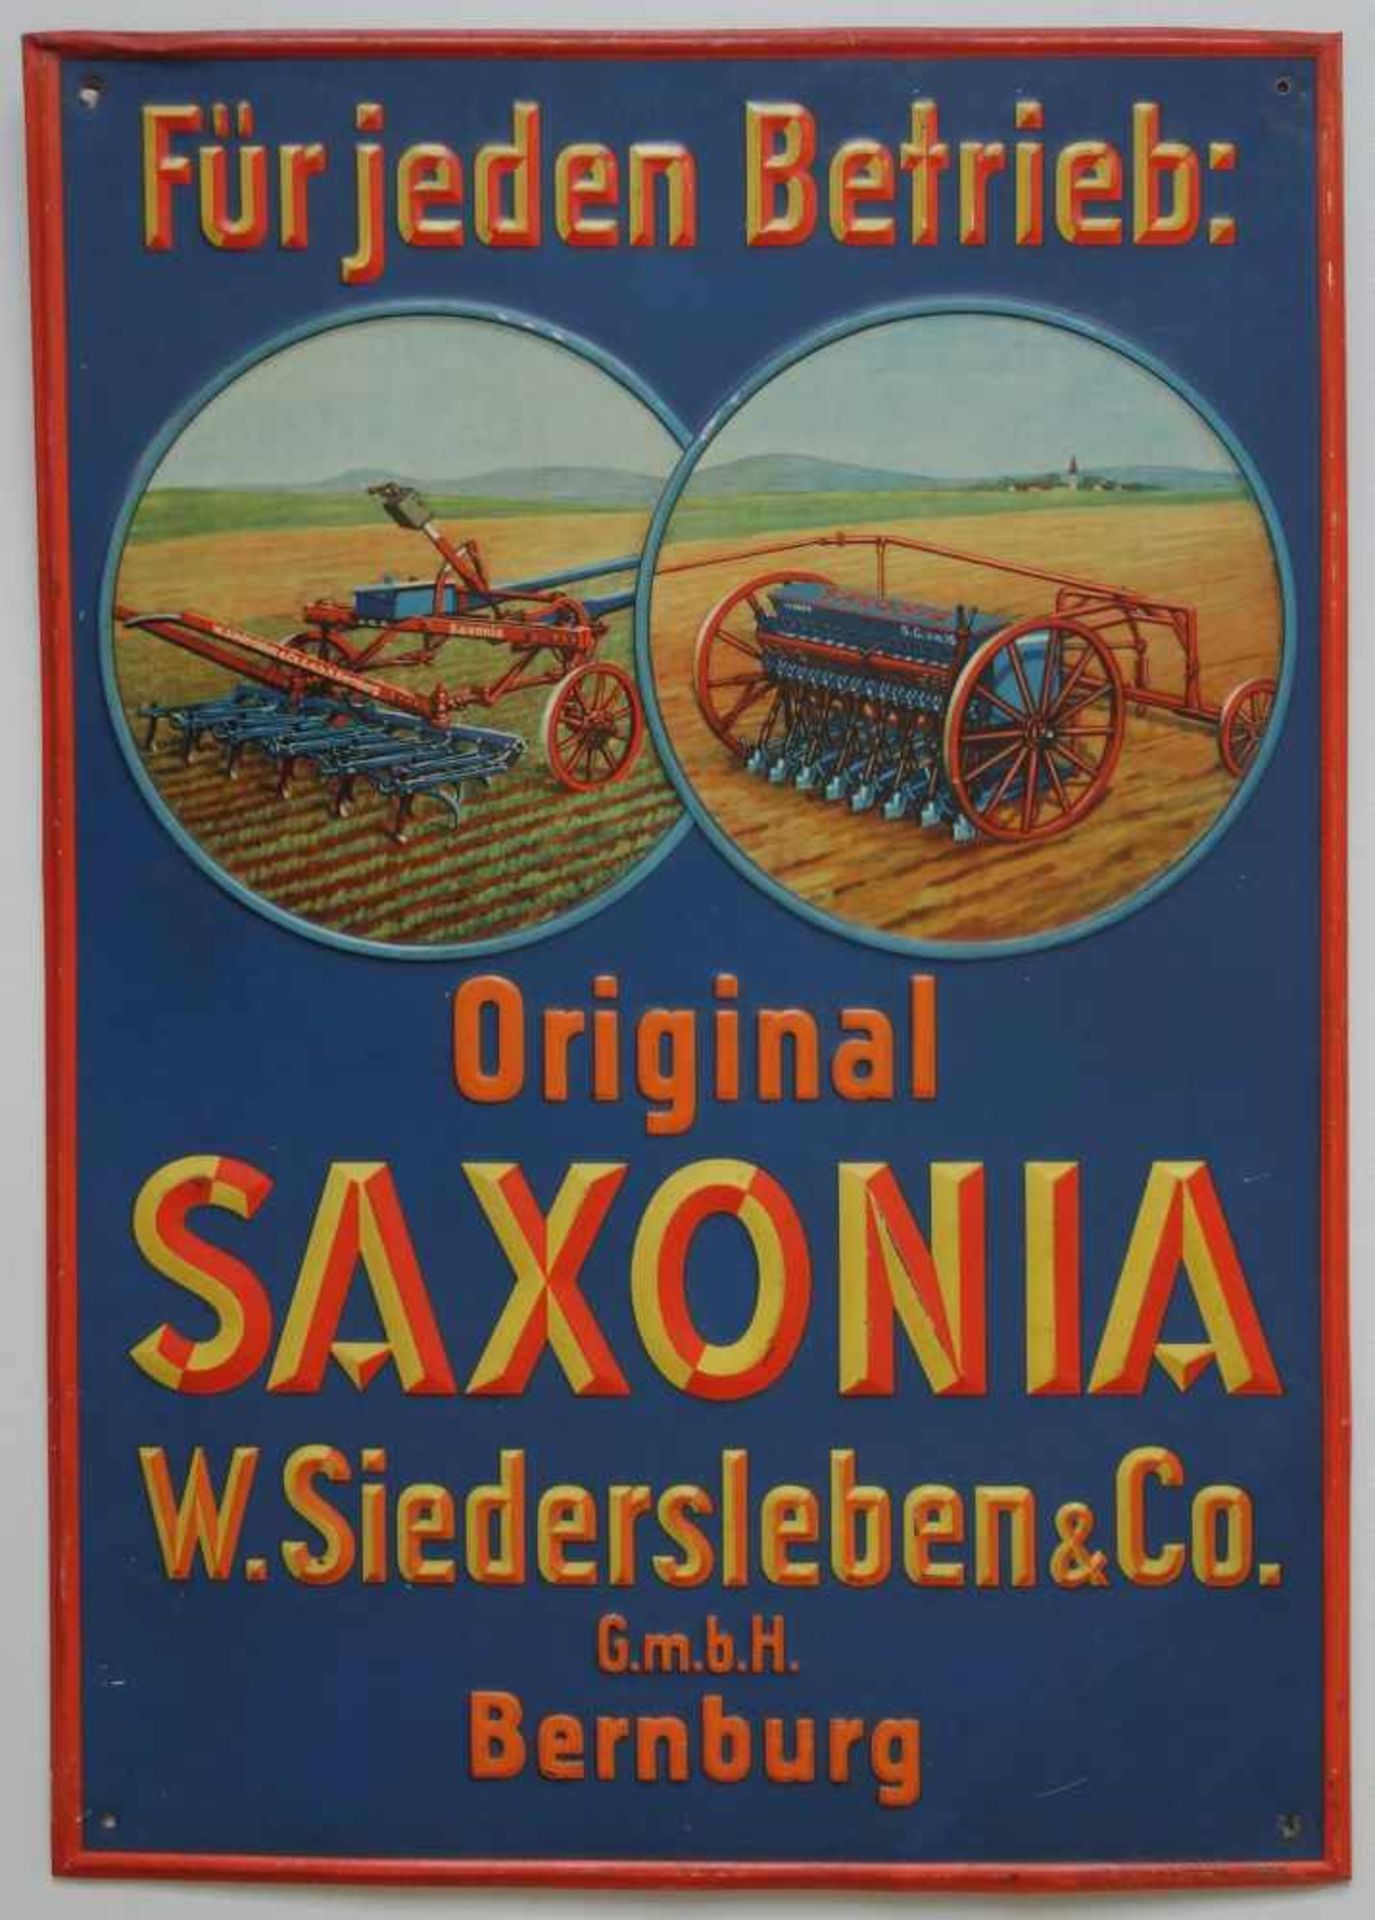 Blechschild "Original Saxonia, W. Siedersleben&Co. G.m.b.H. Bernburg", 1.Hälfte 20.Jh.geprägtes